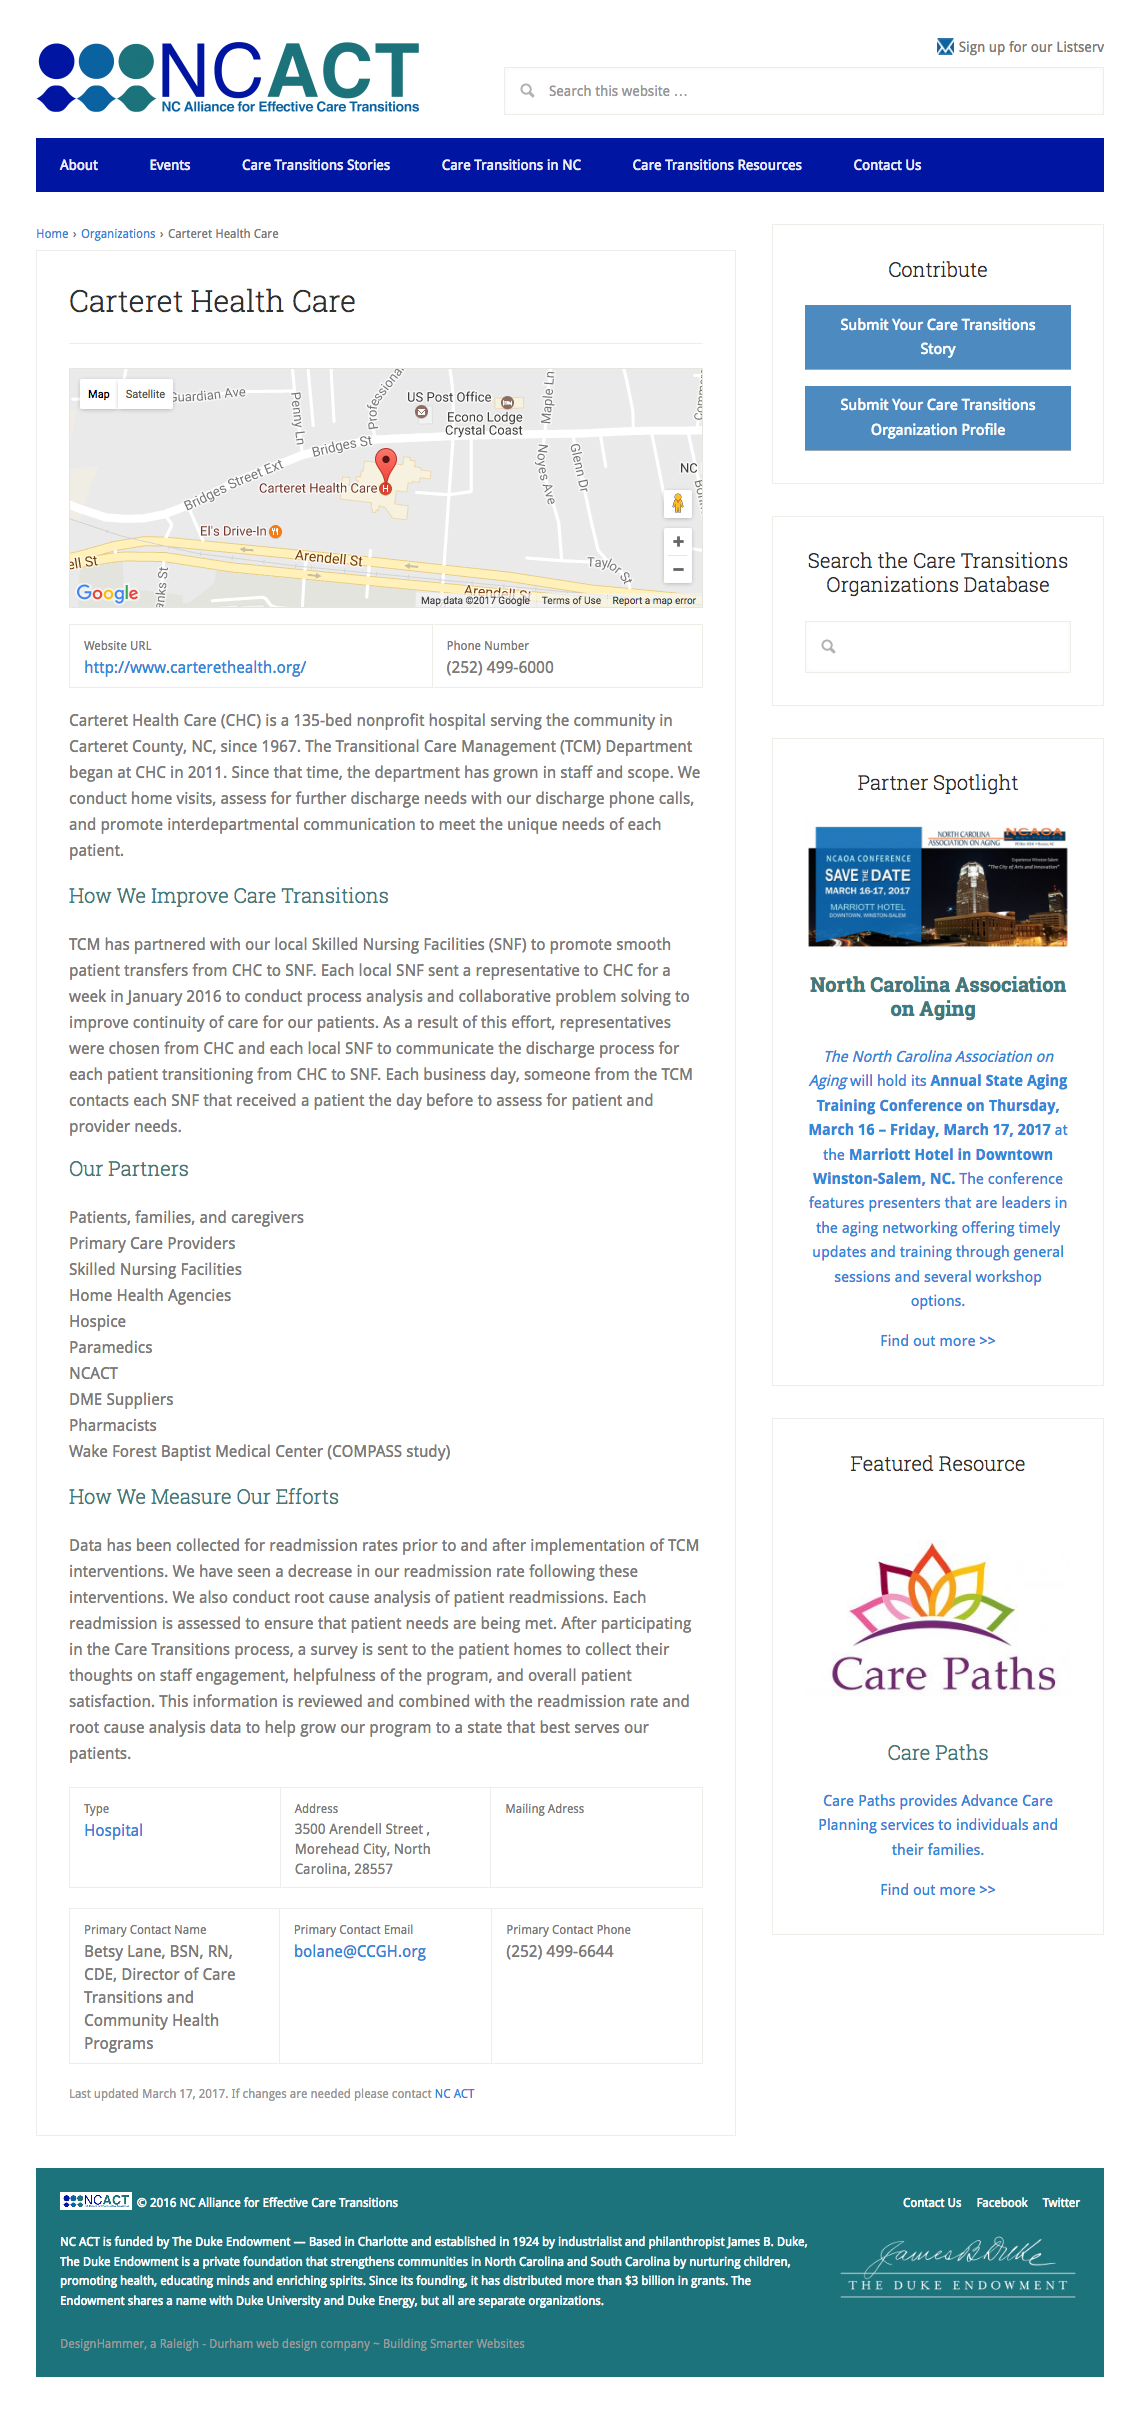 NCACT Care Profile